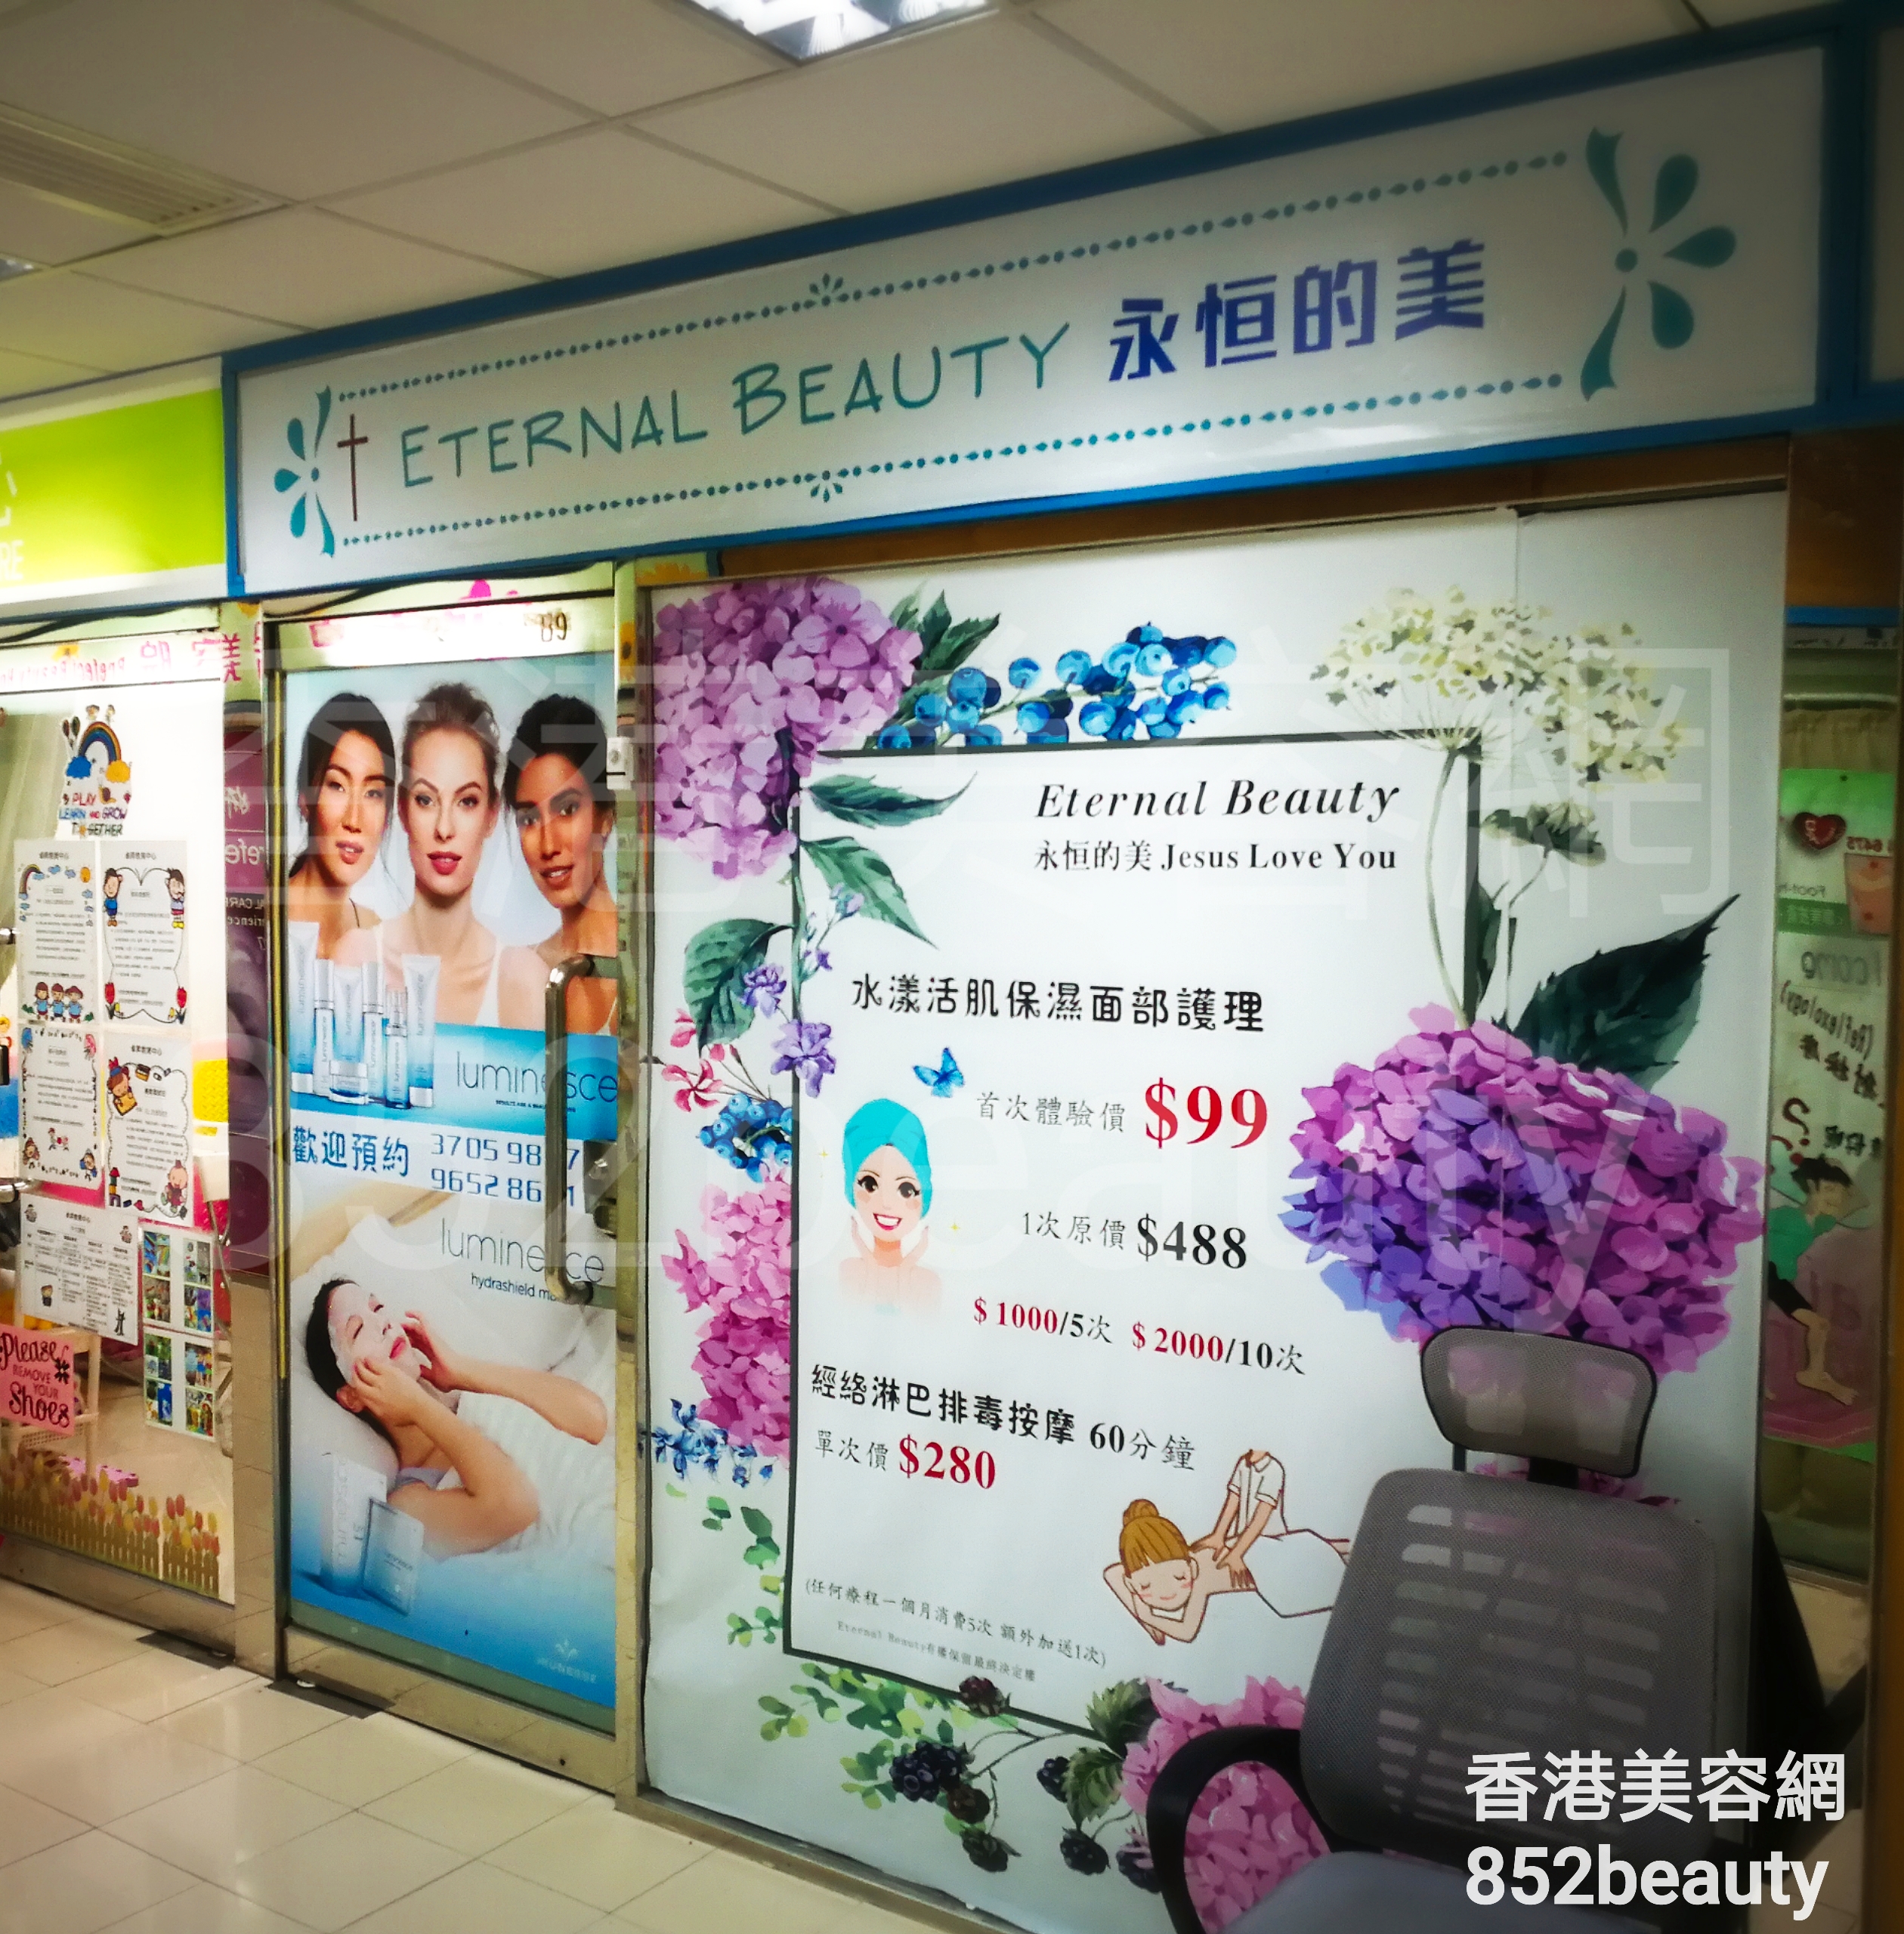 香港美容網 Hong Kong Beauty Salon 美容院 / 美容師: ETERNAL BEAUTY 永恒的美